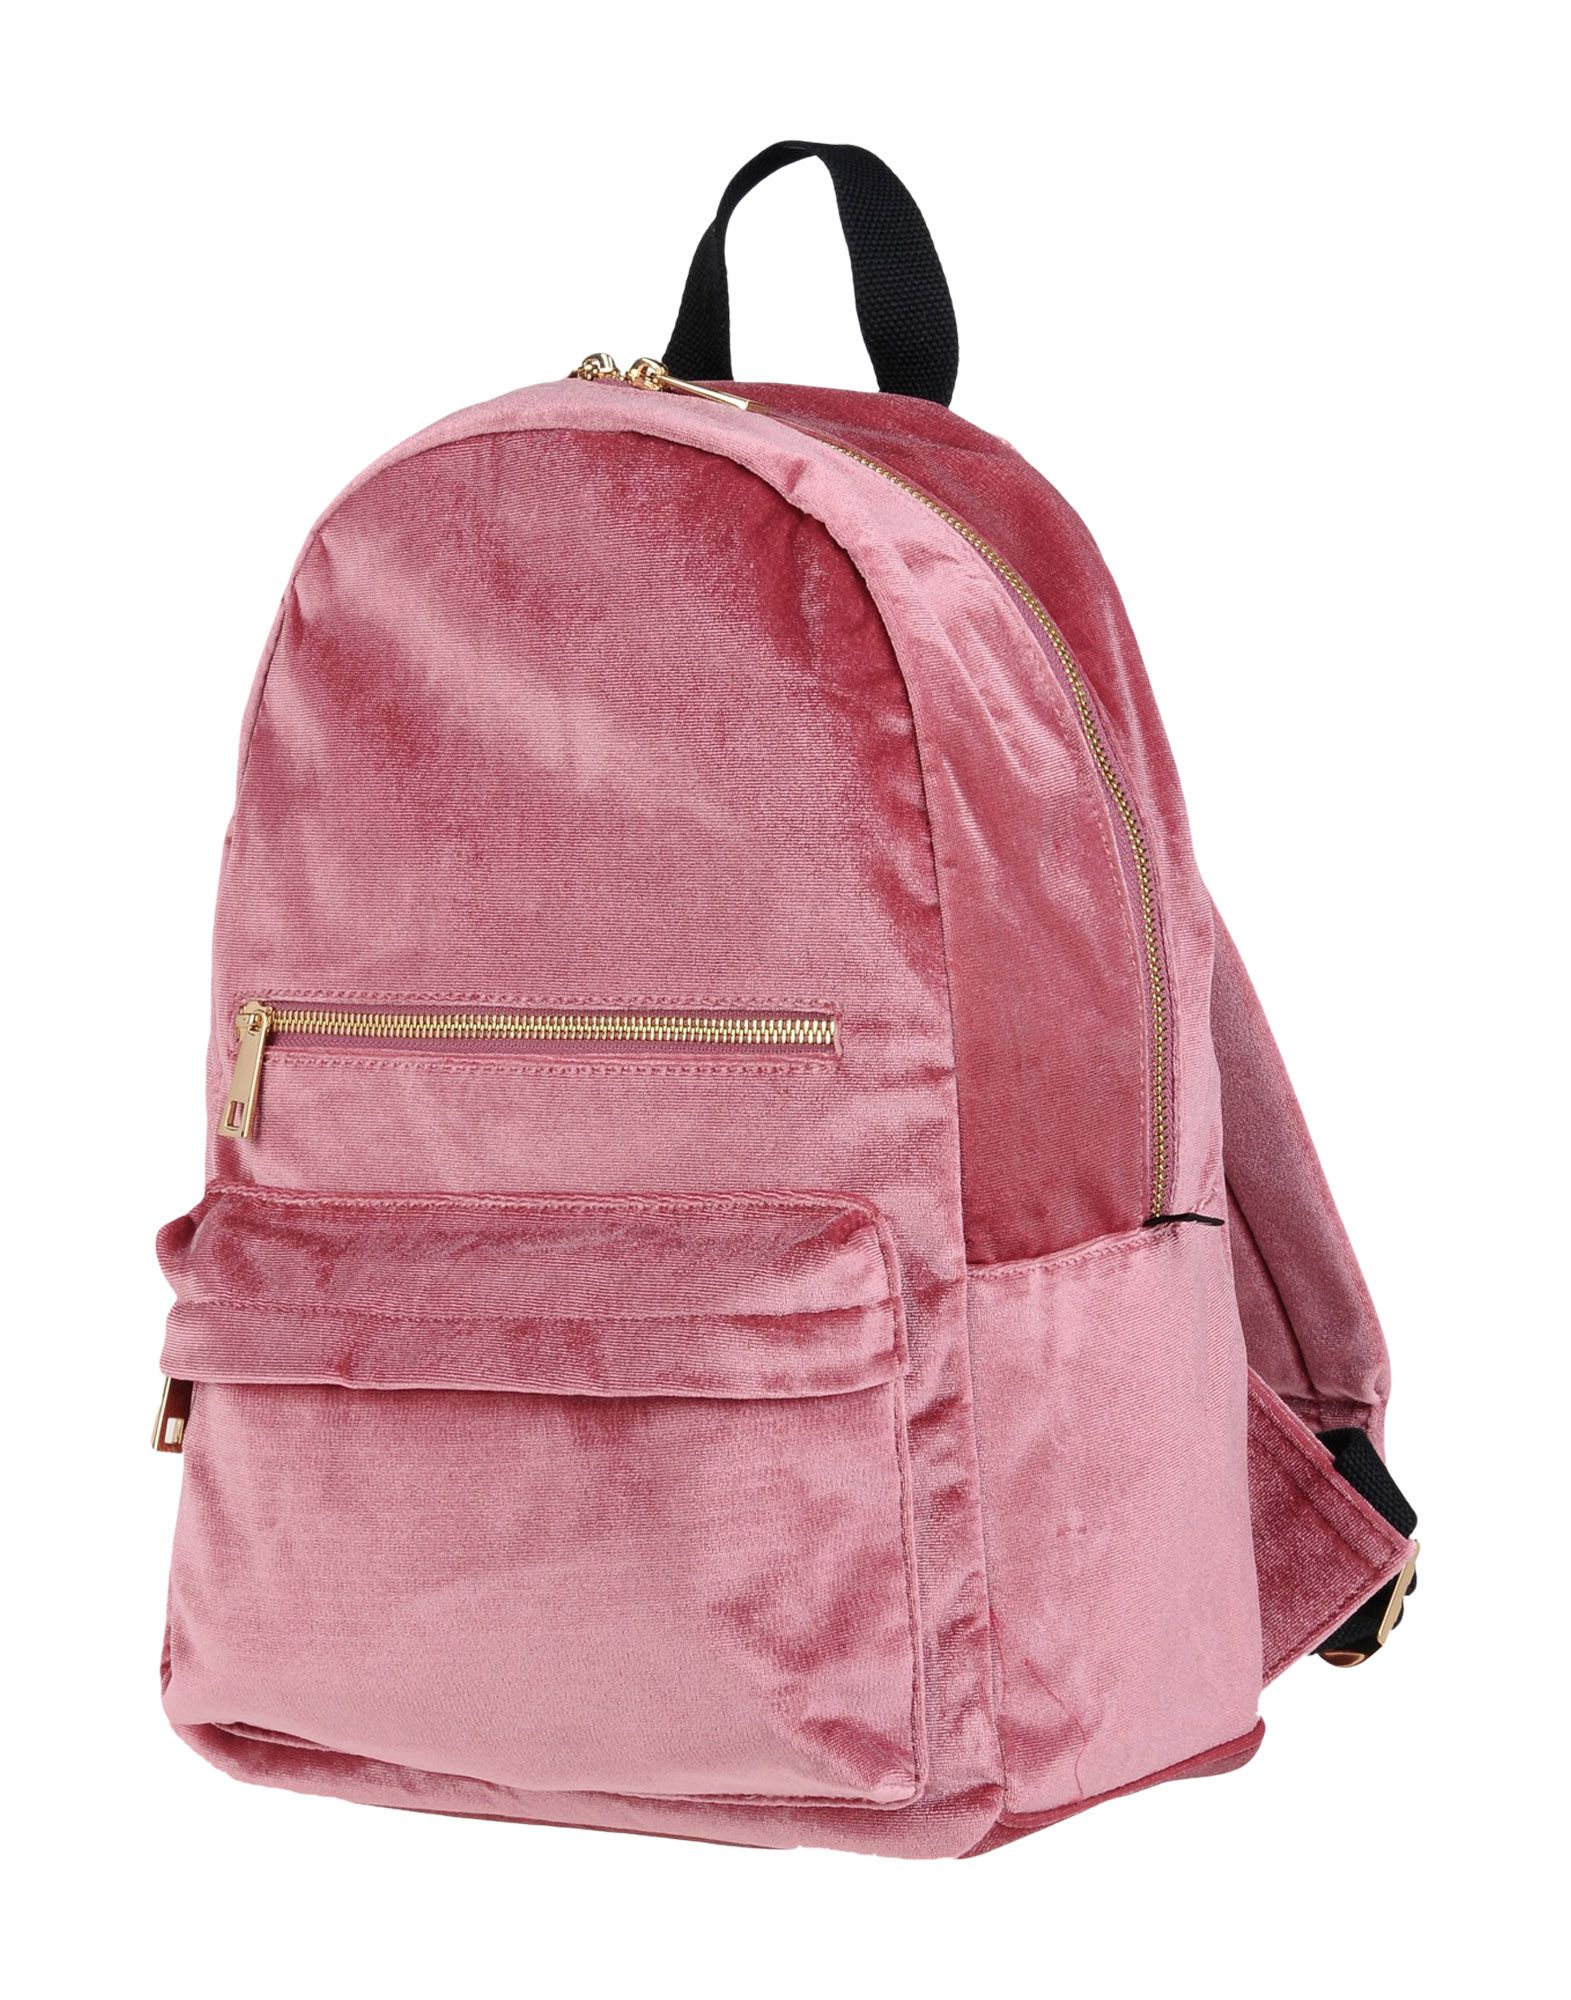 Деловая сумка  - Розовый цвет